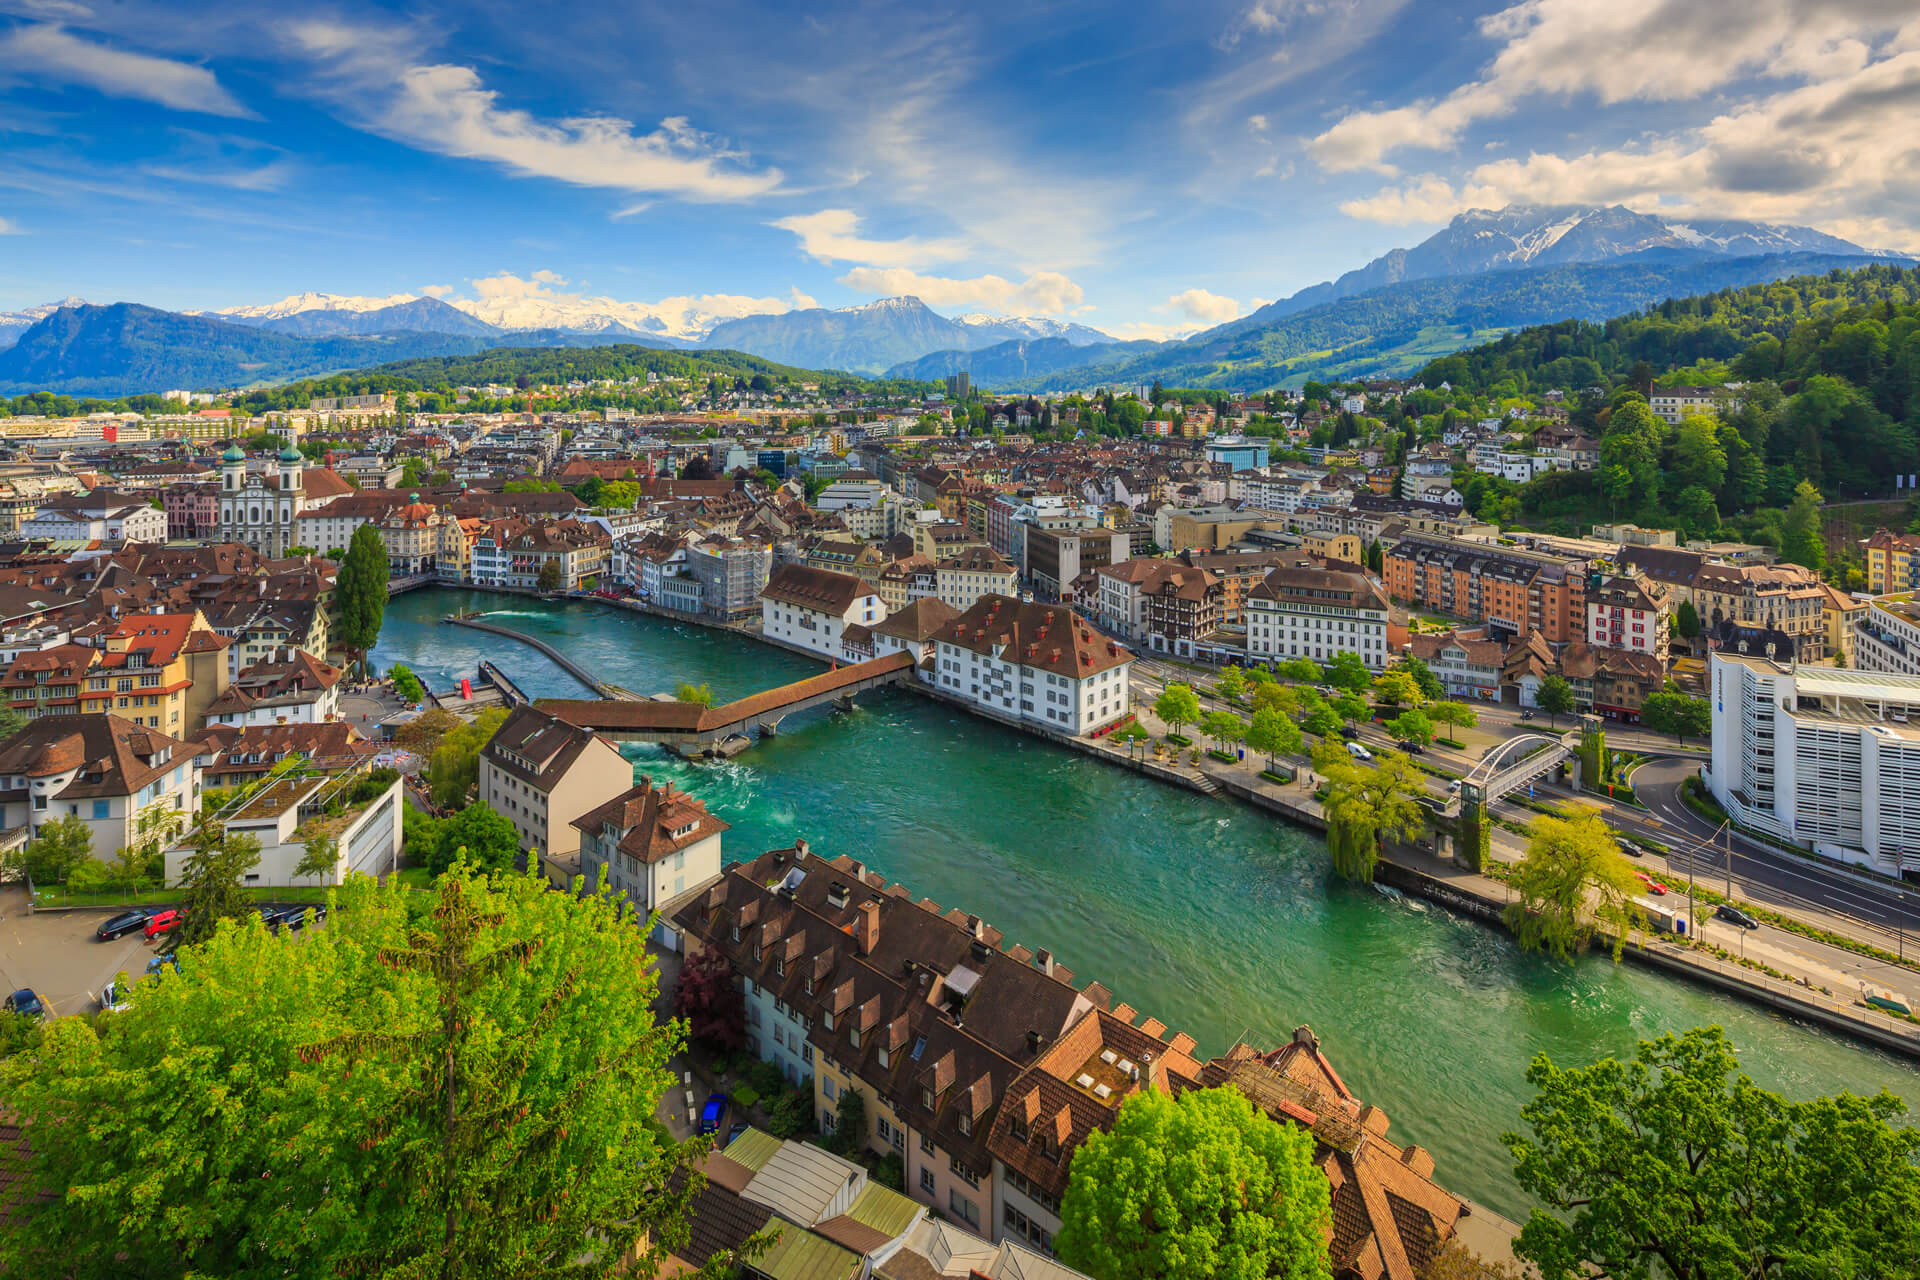 Top View of Luzern Switzerland